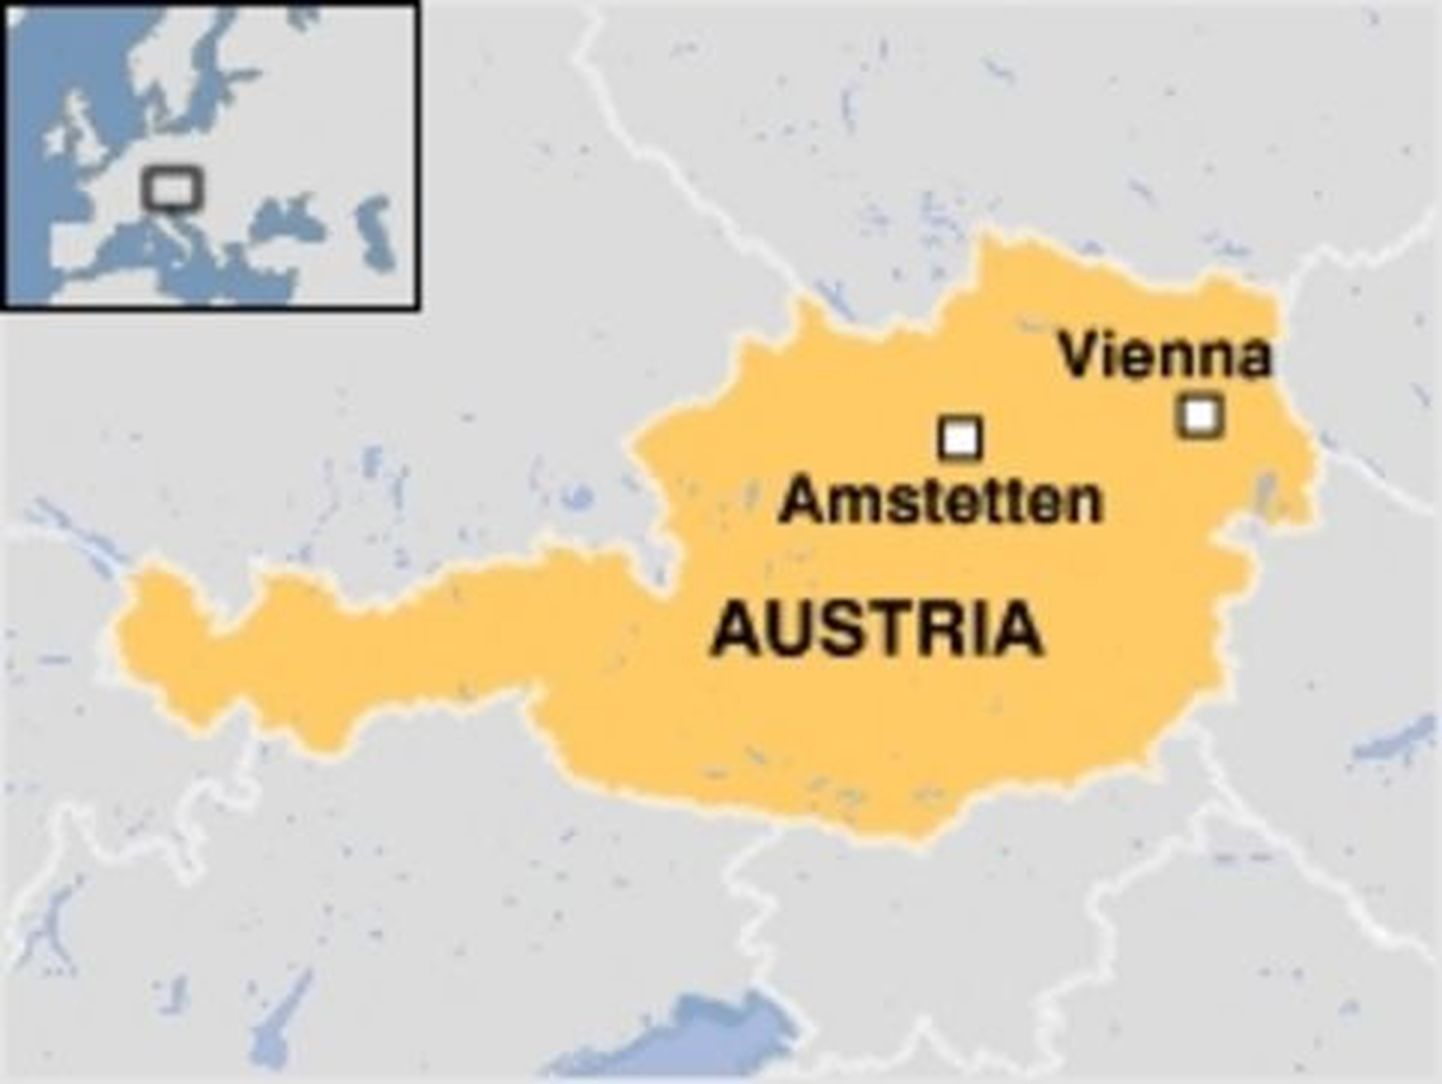 Rakvere Liikumispuuetega Inimeste Ühing külastas Austriat.